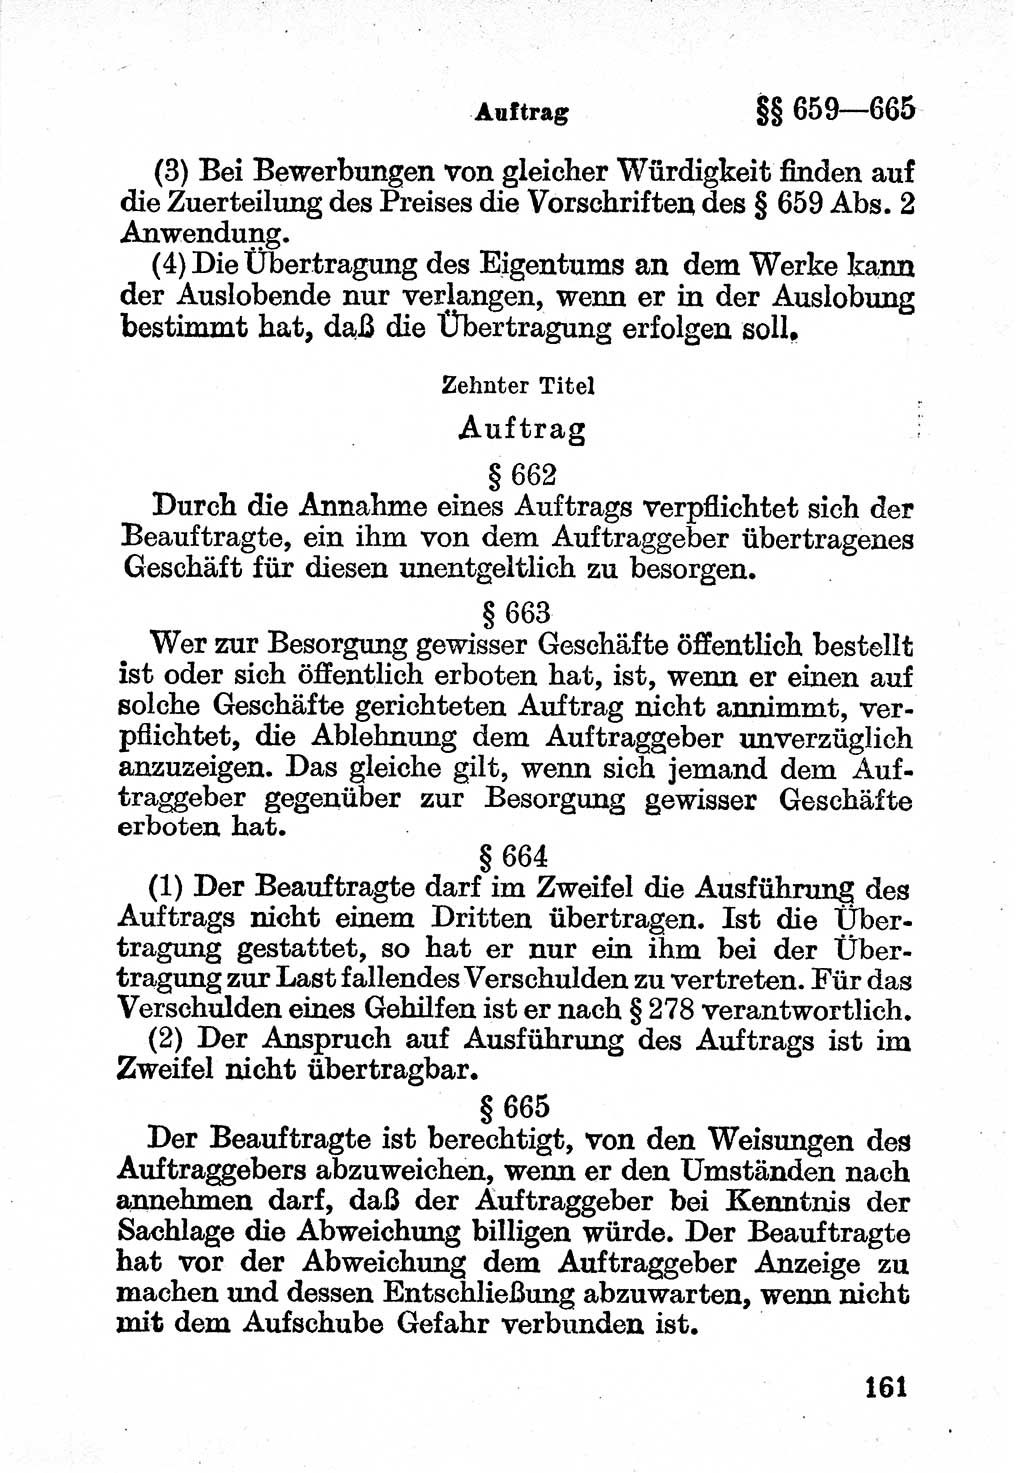 Bürgerliches Gesetzbuch (BGB) nebst wichtigen Nebengesetzen [Deutsche Demokratische Republik (DDR)] 1956, Seite 161 (BGB Nebenges. DDR 1956, S. 161)